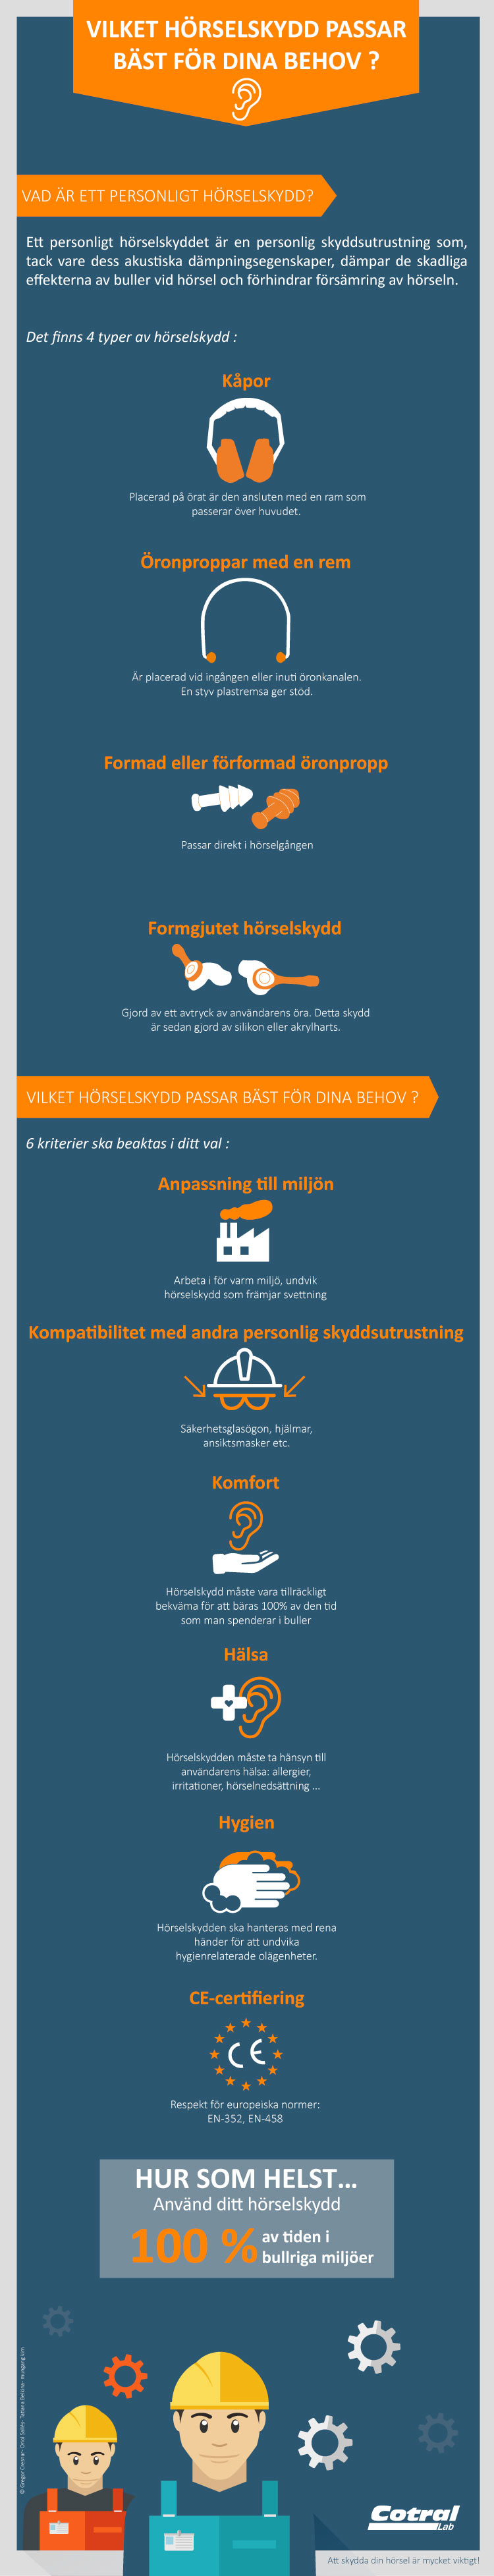 Vilket hörselskydd passar bäst för dina behov ?